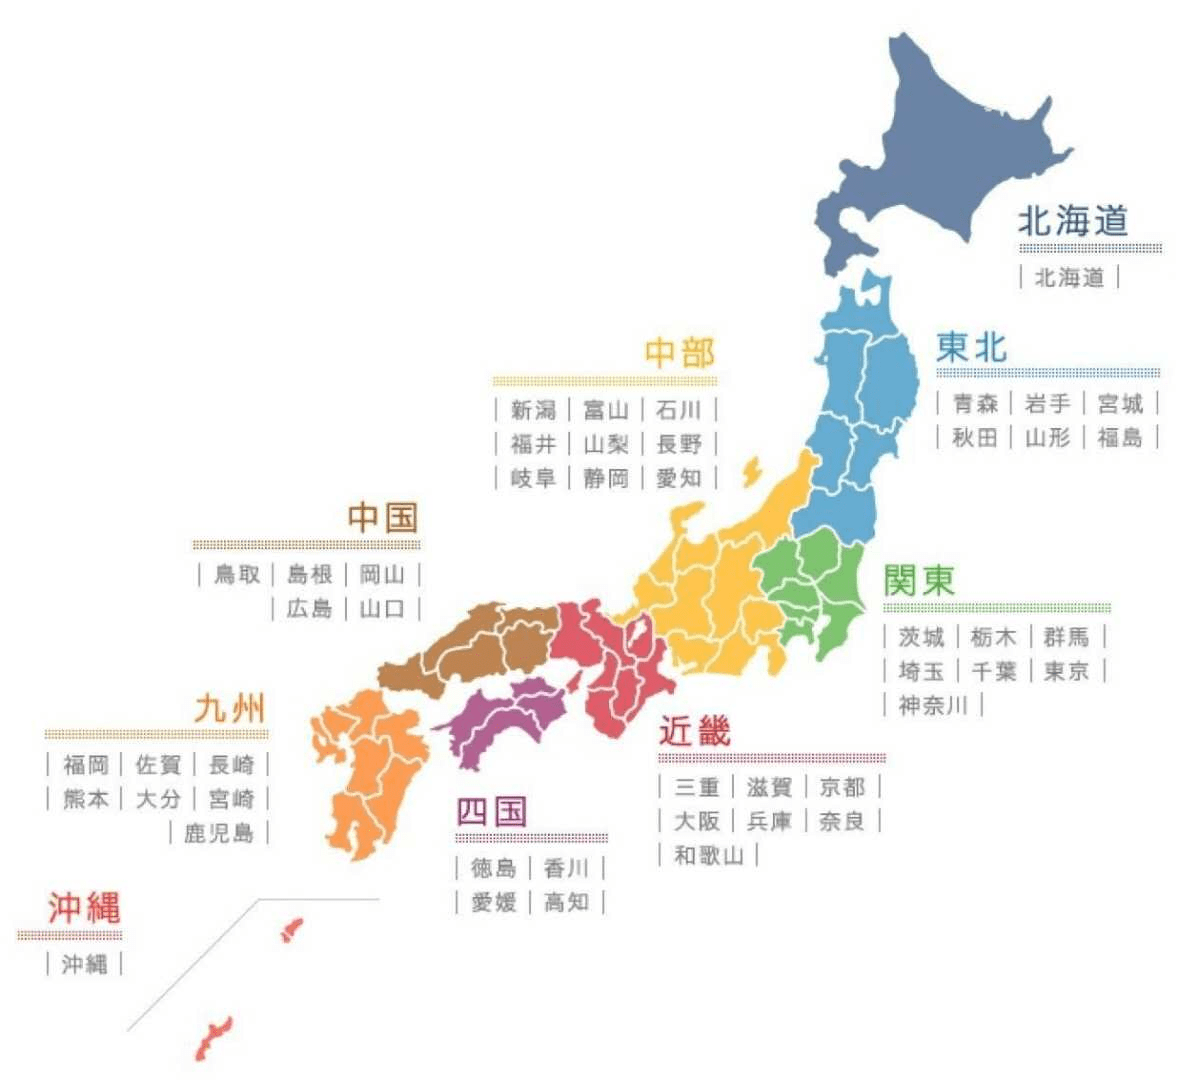 日本的藩主大名在明治政府推行"废藩置县"时为什么不反抗?